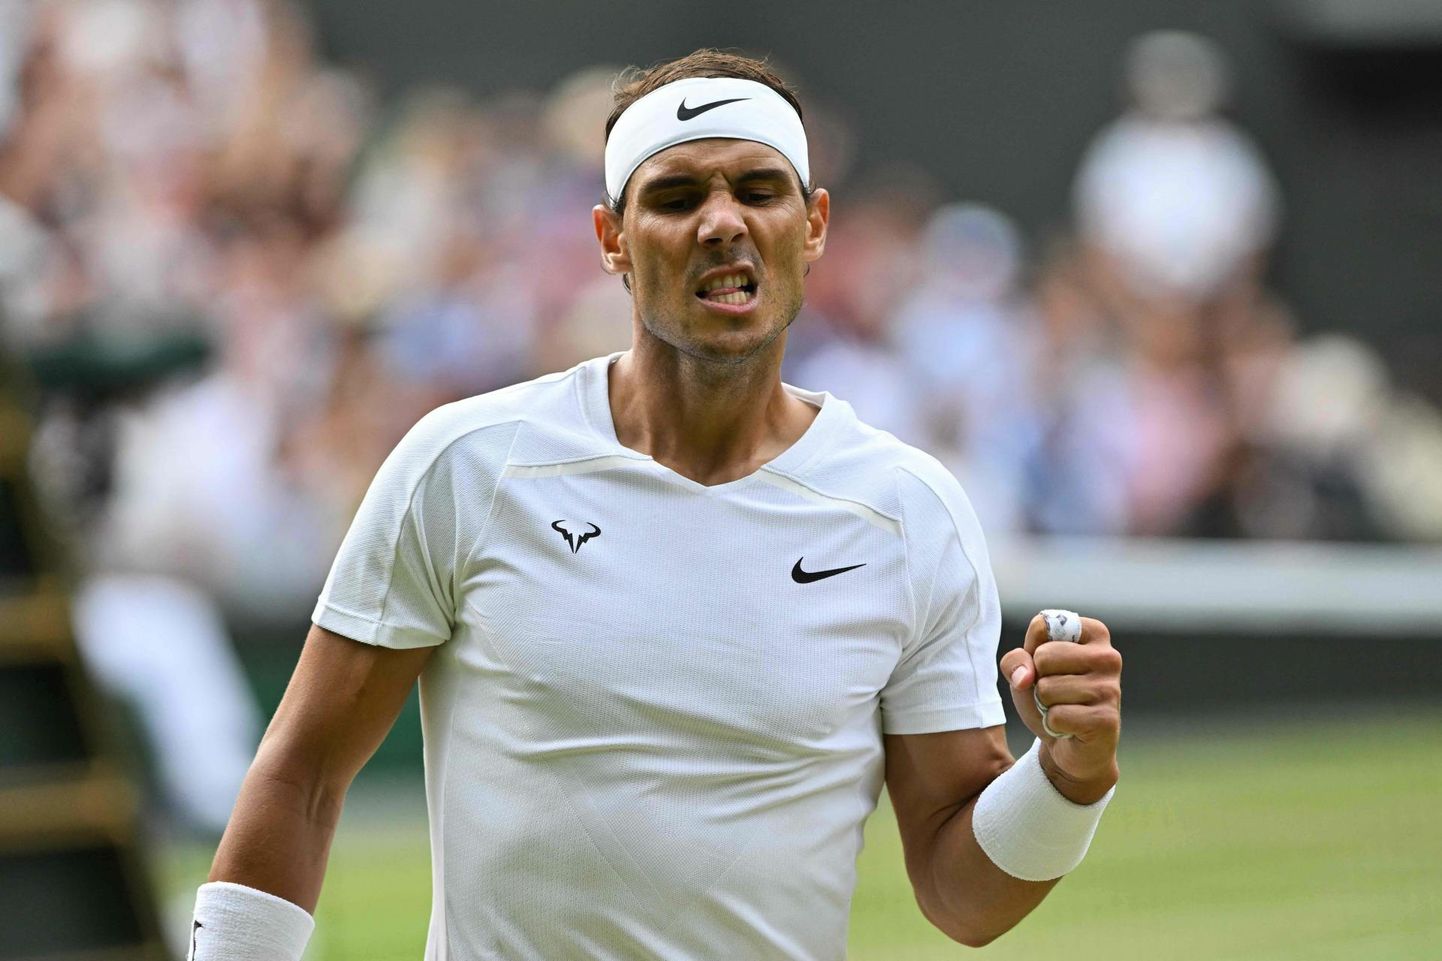 Rafael Nadal on karjääri jooksul mänginud mitmesuguste vigastustega. Wimbledonis segab teda kõhulihasetrauma.